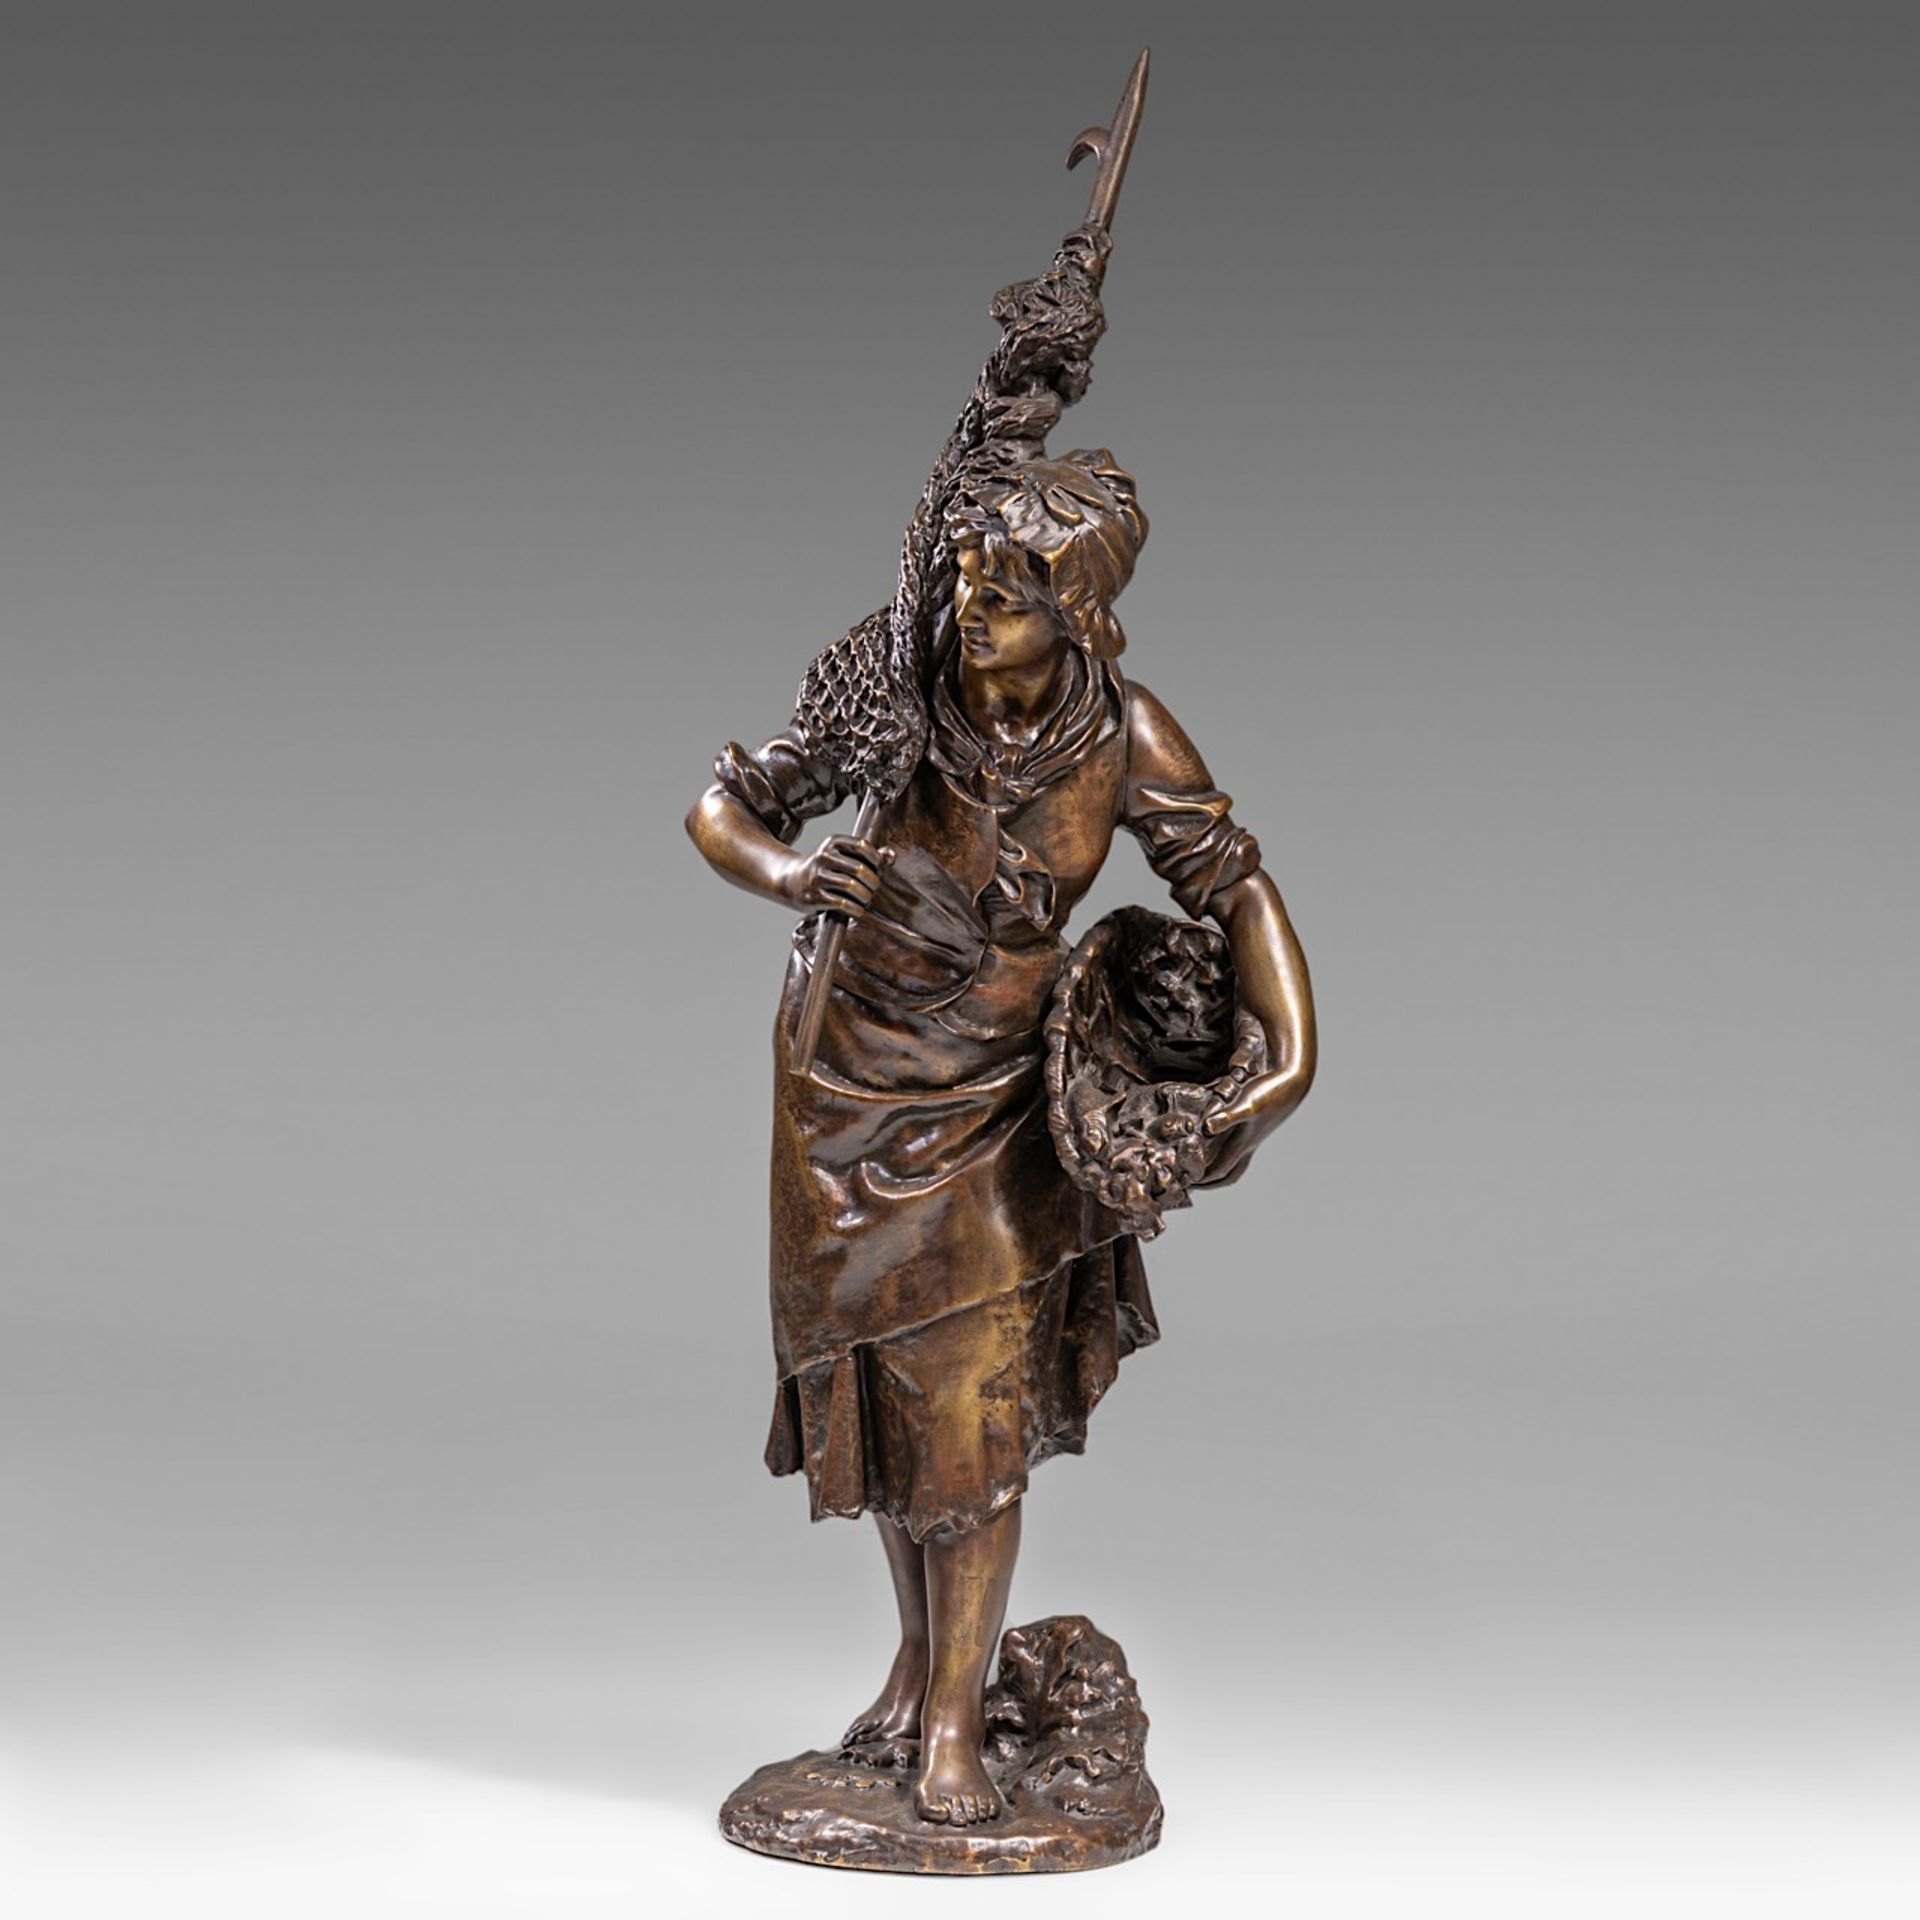 Henryk II Kossowski (1855-1921), 'Le retour de la peche', patinated bronze, H 105 cm